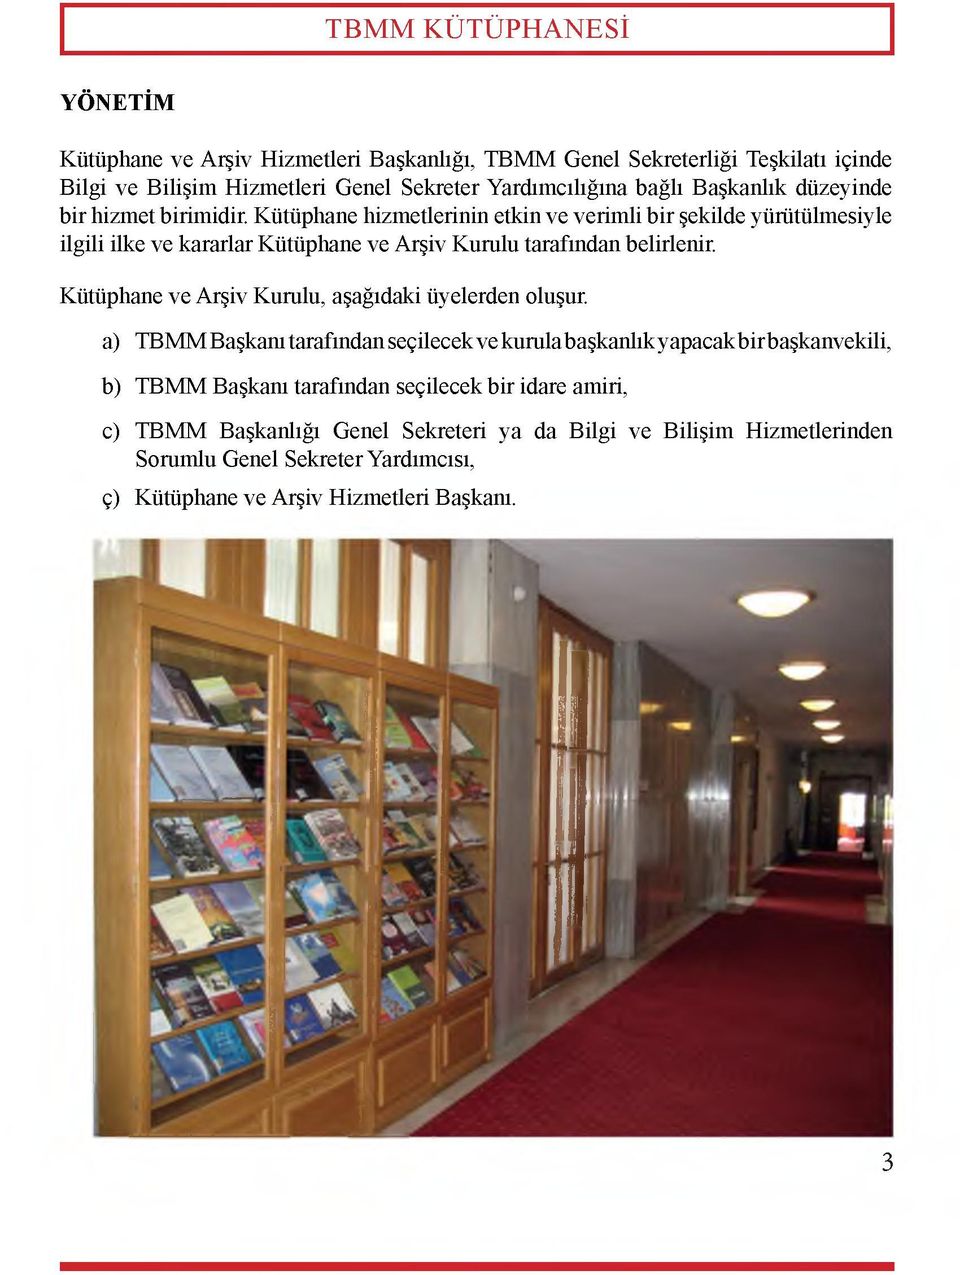 Kütüphane hizmetlerinin etkin ve verimli bir şekilde yürütülmesiyle ilgili ilke ve kararlar Kütüphane ve Arşiv Kurulu tarafından belirlenir.